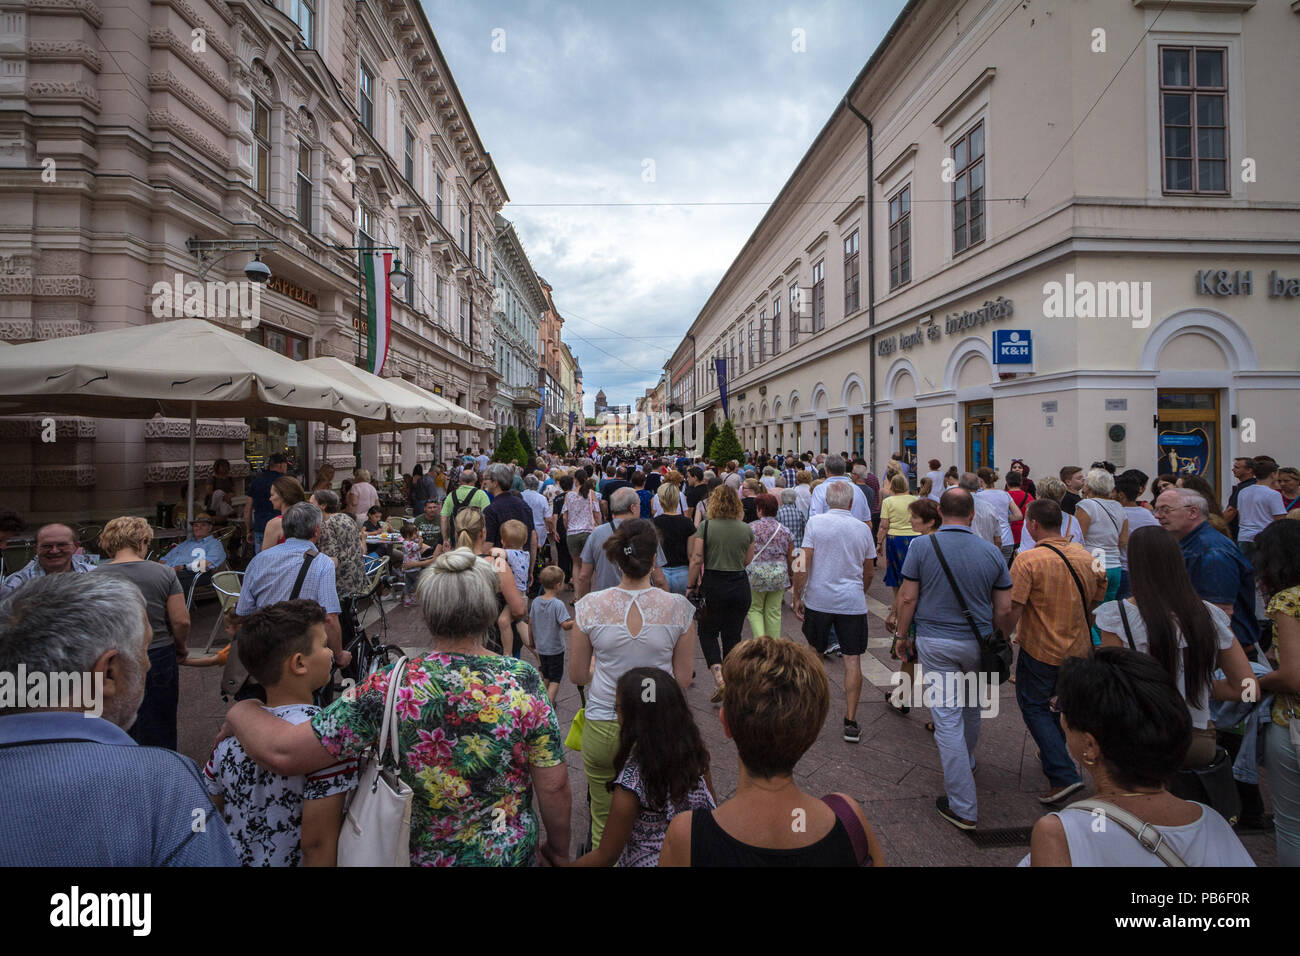 SZEGED, UNGARN - Juli 4, 2018: Straße von Szeged Zentrum bei einem bewölkten Nachmittag voll. Szeged ist die größte Stadt im südlichen Ungarn Bild Stockfoto